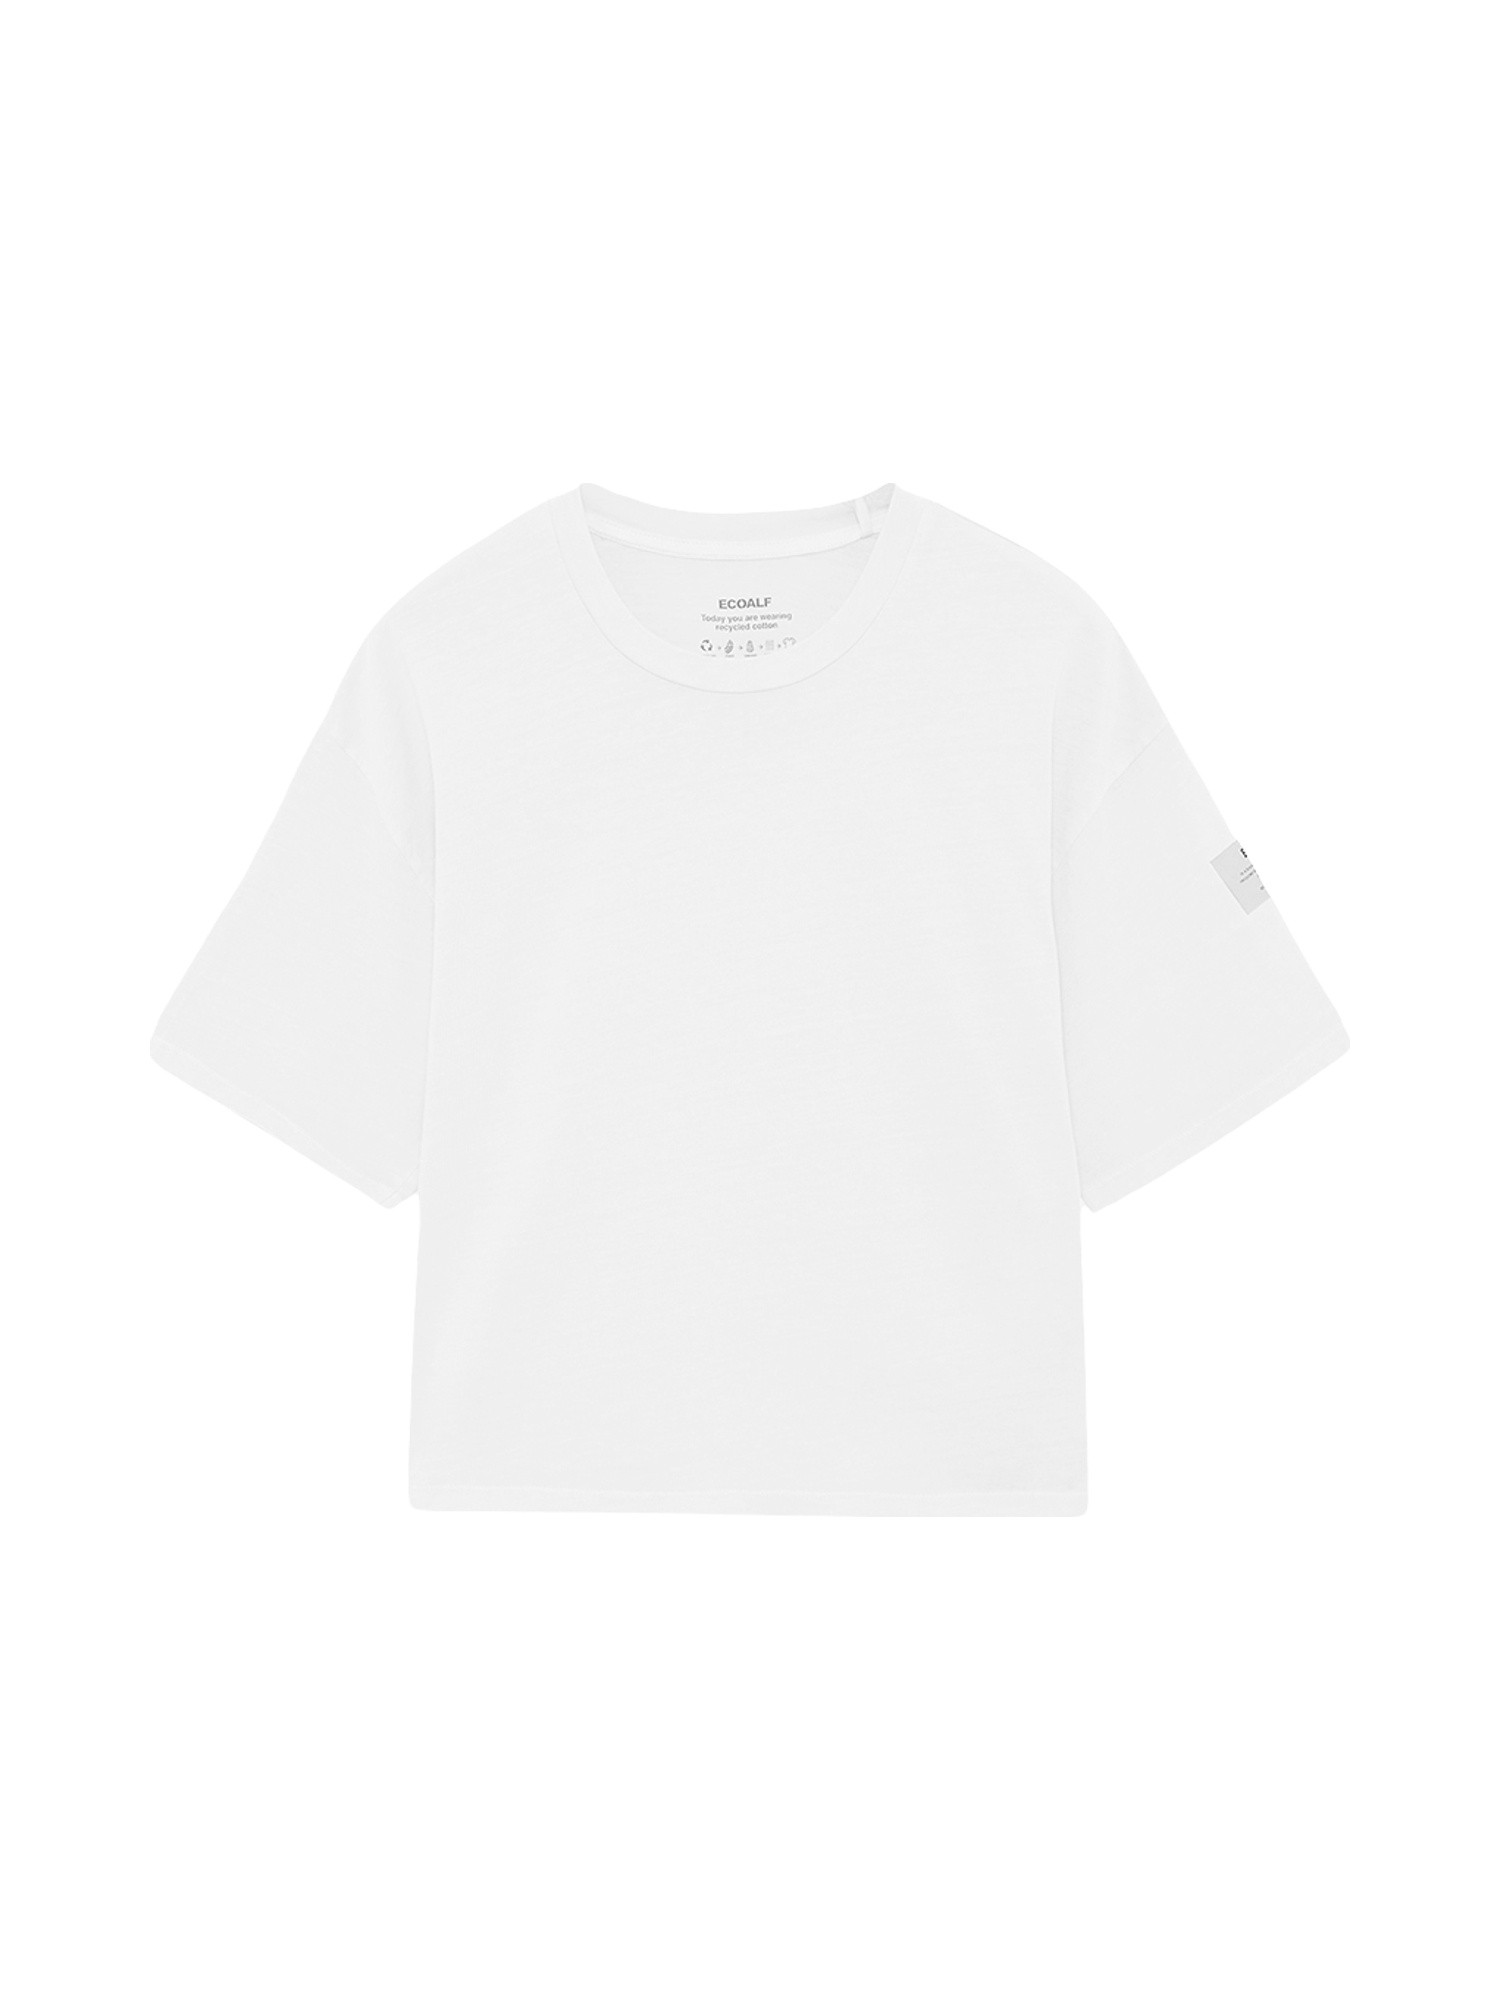 Ecoalf - Living oversized T-shirt, White, large image number 0